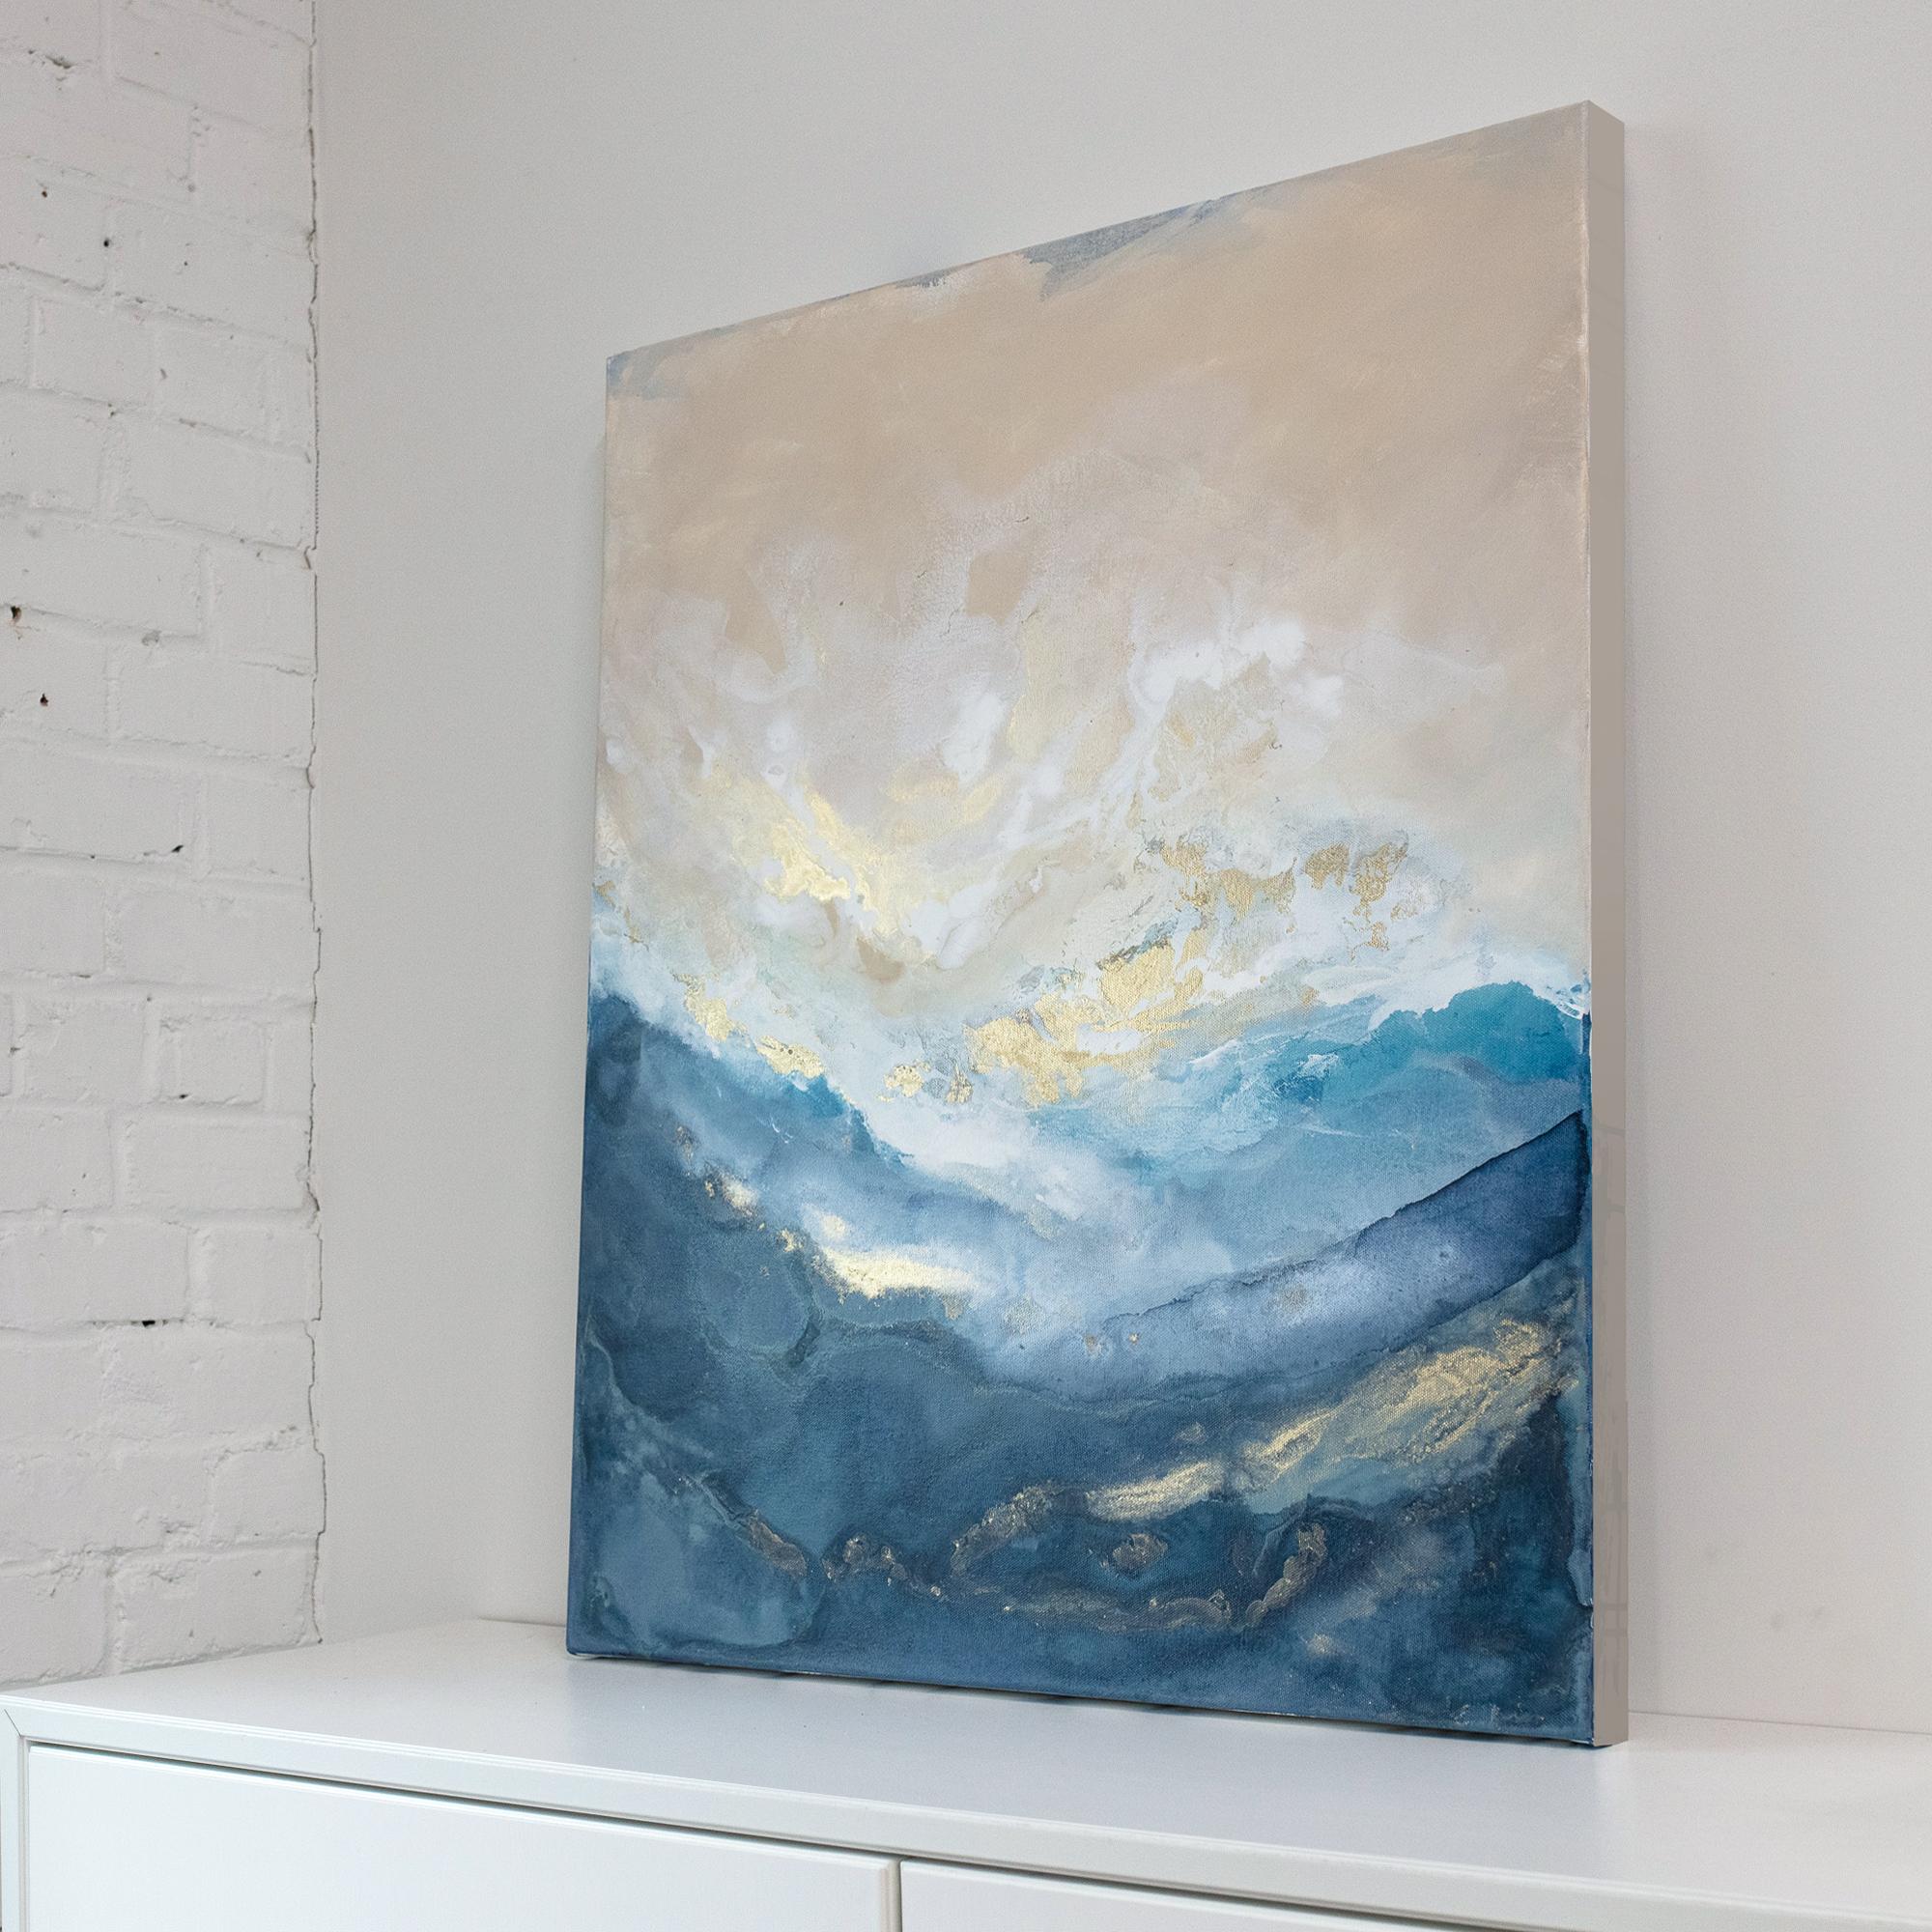 Dieses abstrakte Gemälde von Julia Contacessi zeichnet sich durch eine helle, küstennahe Farbpalette aus, die im unteren Teil der Komposition aus verschiedenen Blautönen und im oberen Teil aus hellen Rot- und Weißtönen besteht. In der Mitte des